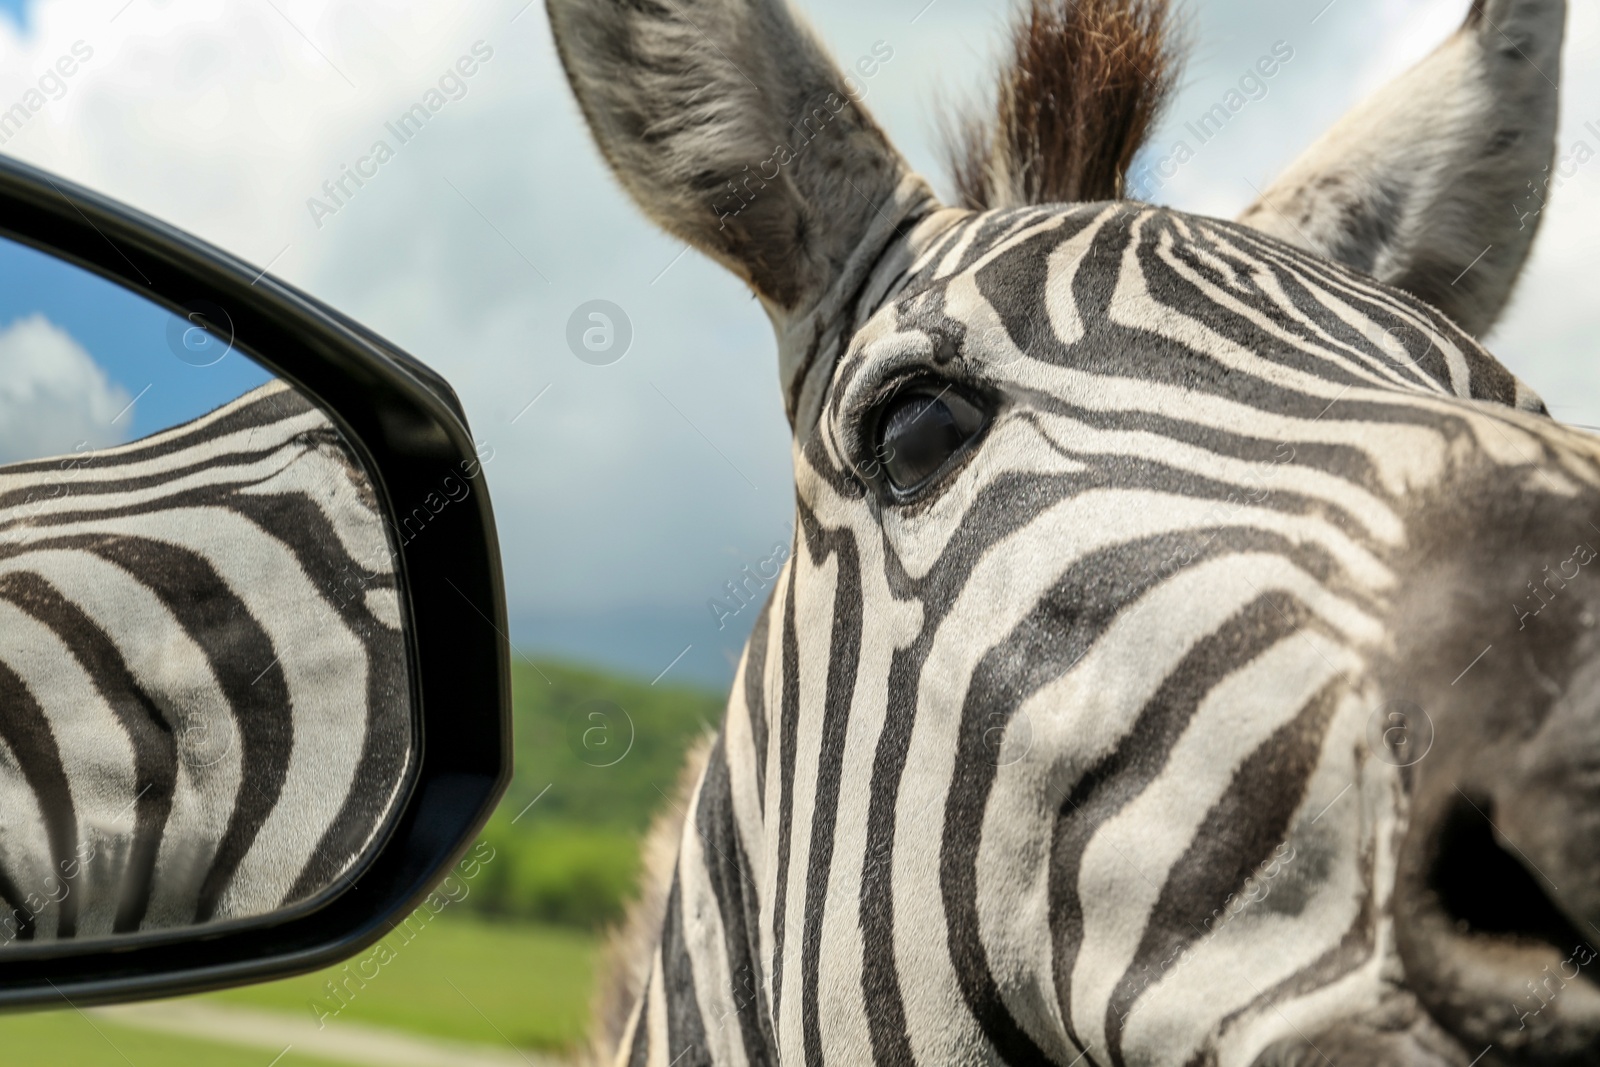 Photo of Cute curious African zebra near car in safari park, closeup